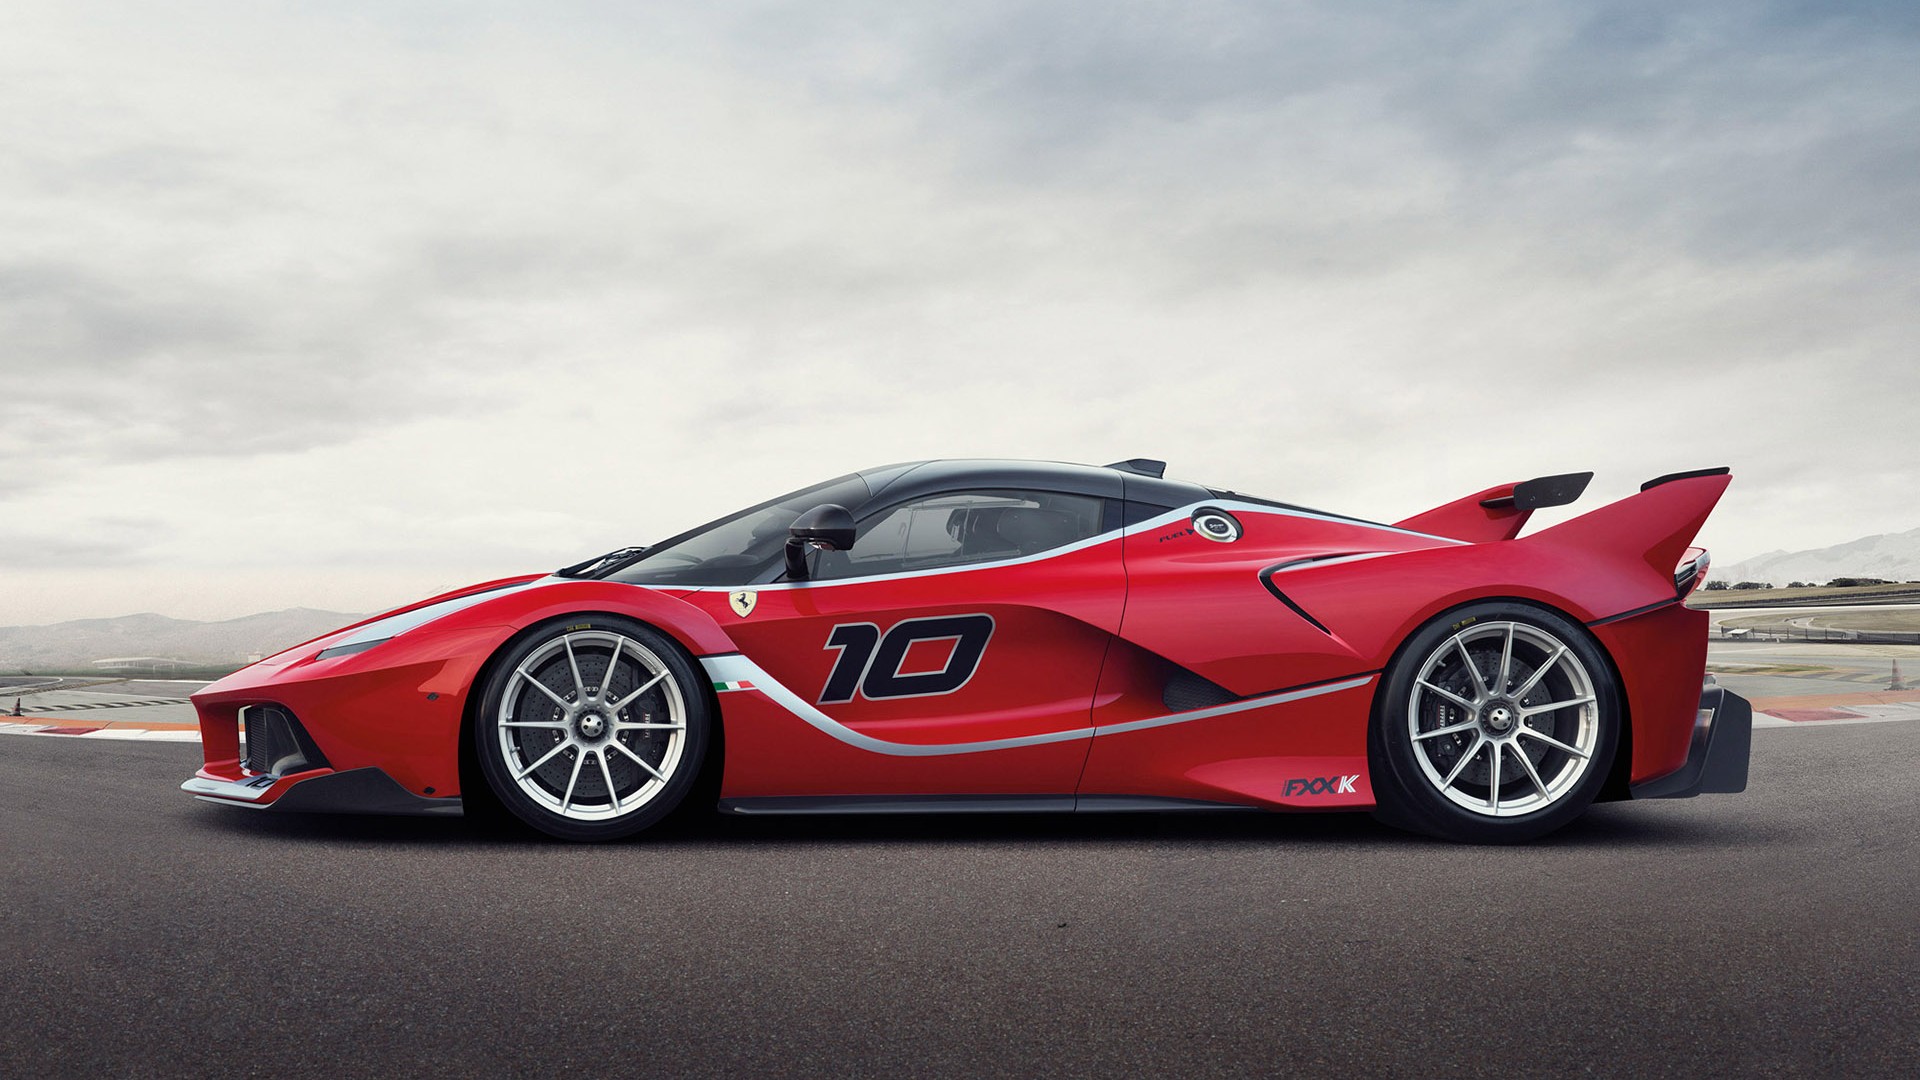 Meilleurs fonds d'écran Ferrari Fxx K 2015 pour l'écran du téléphone